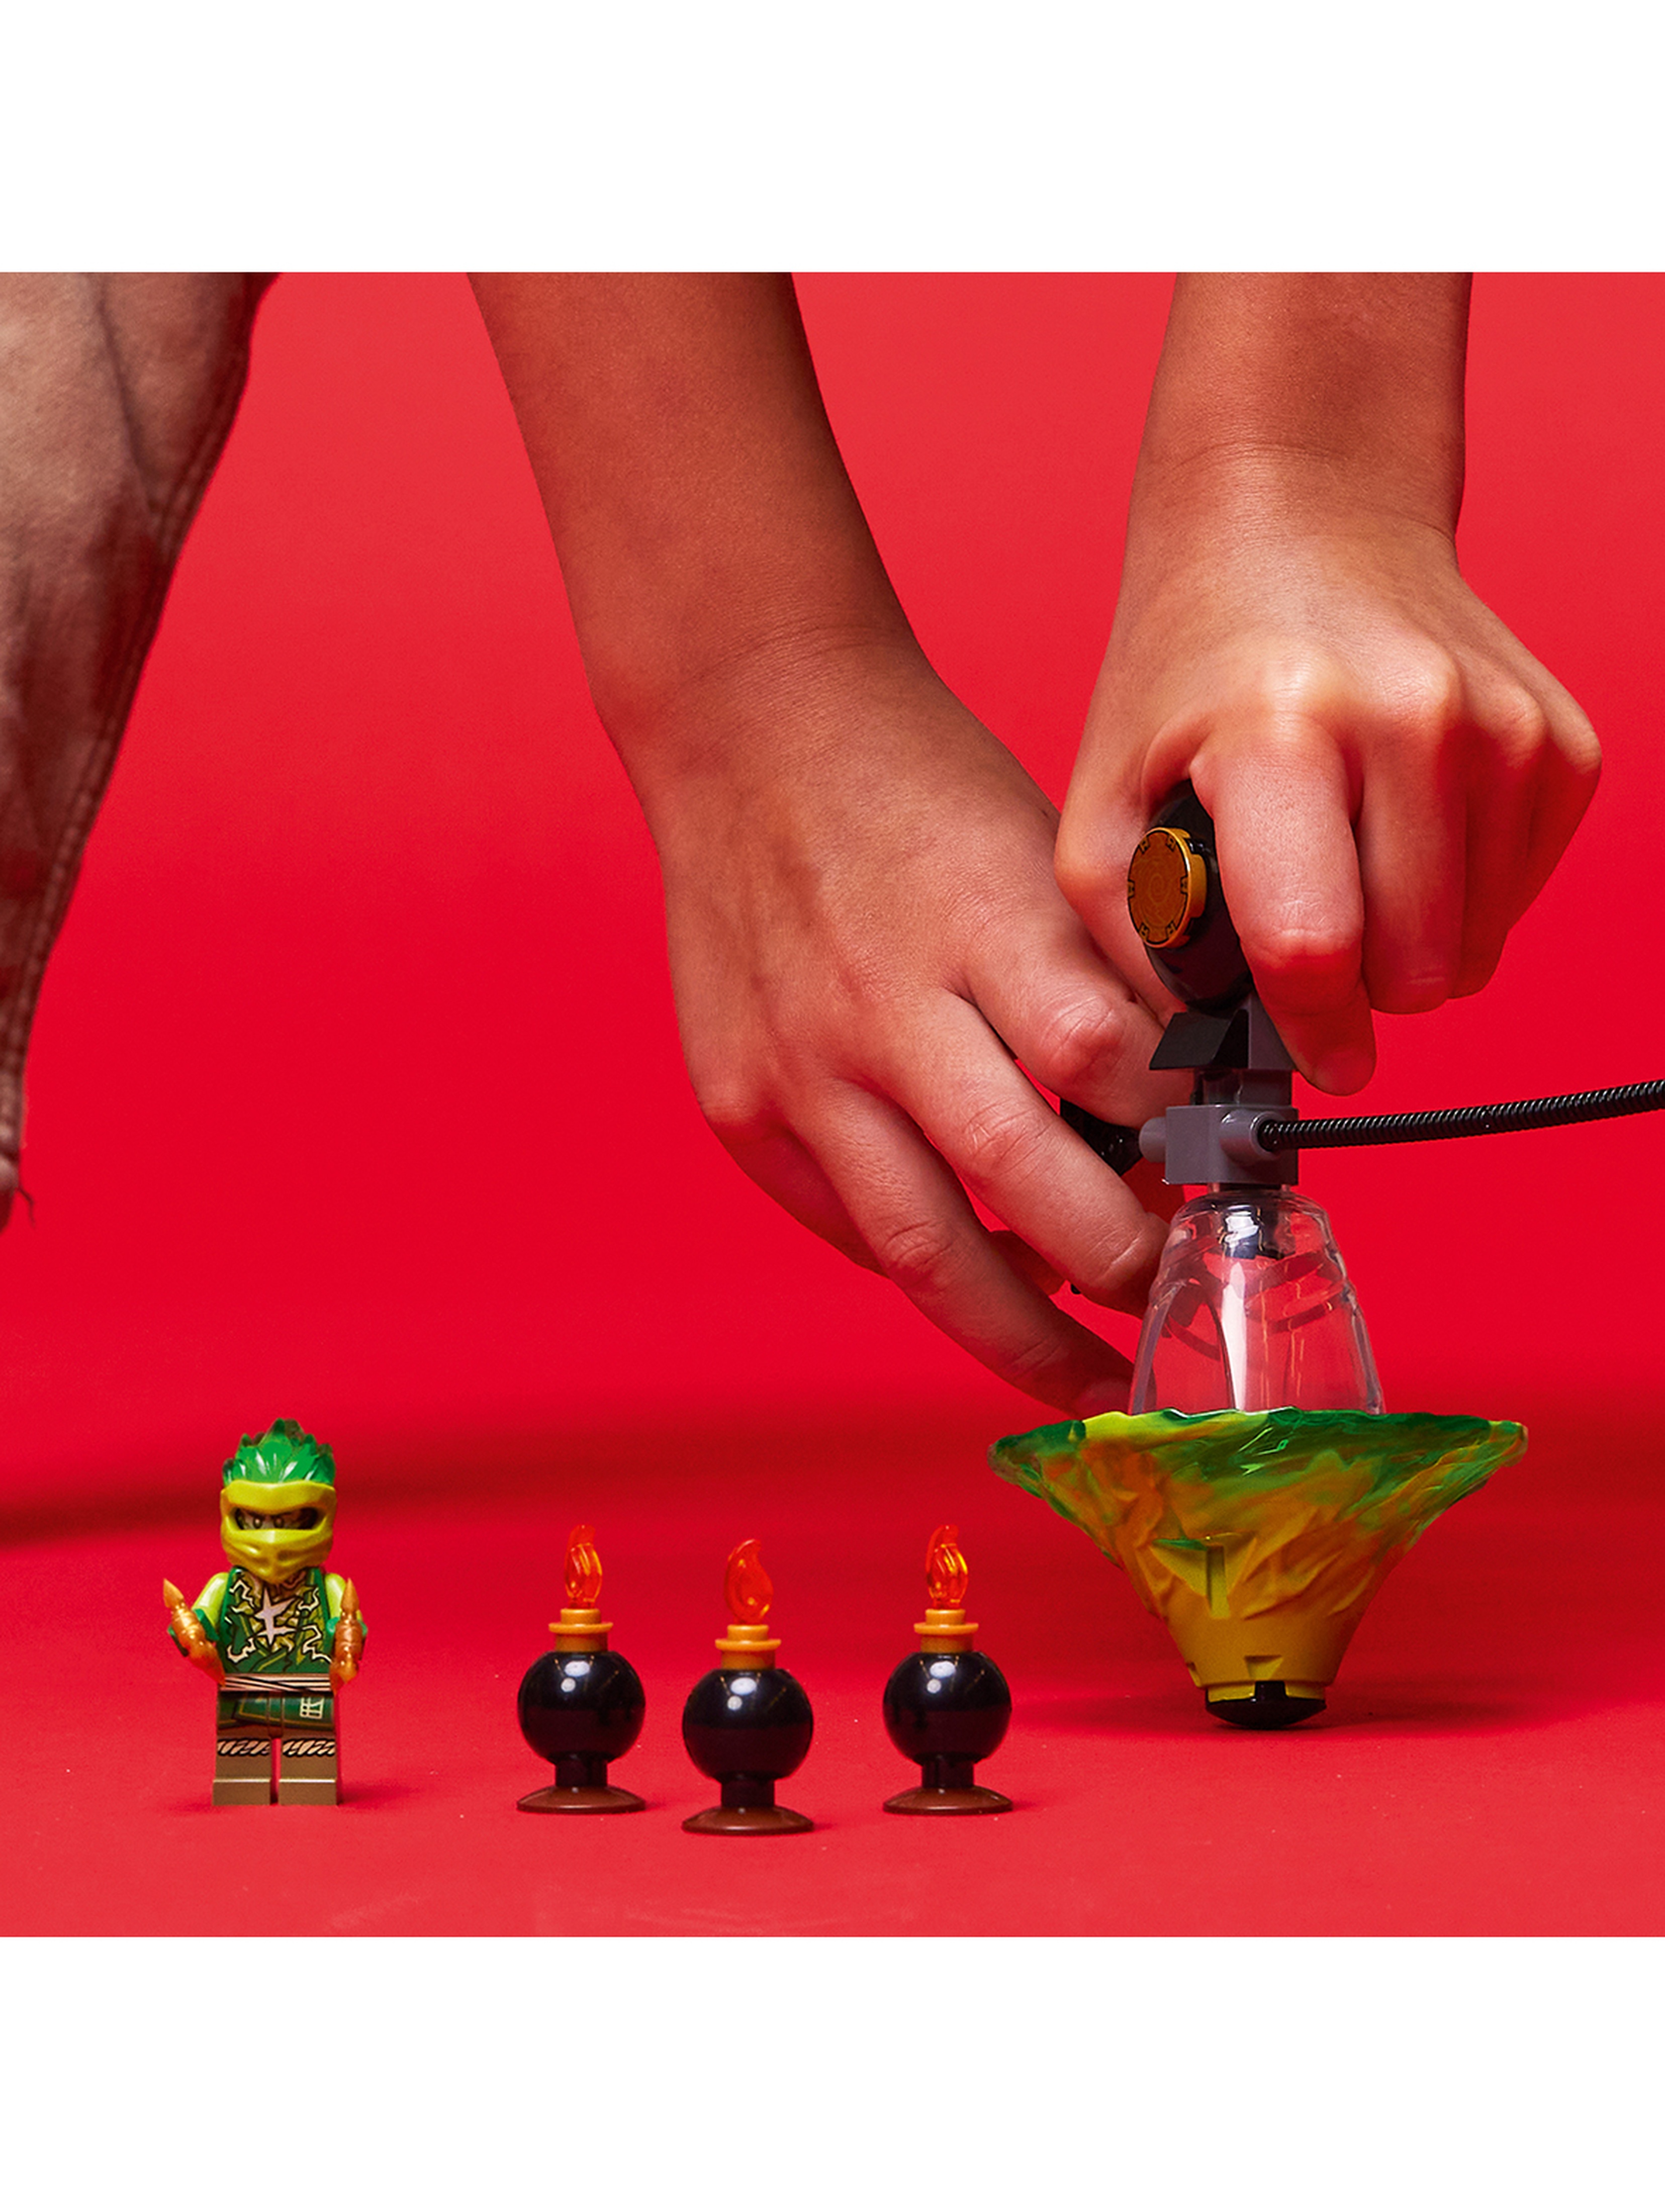 LEGO Ninjago - Szkolenie wojownika Spinjitzu Lloyda 70689 - 32 elementy, wiek 6+